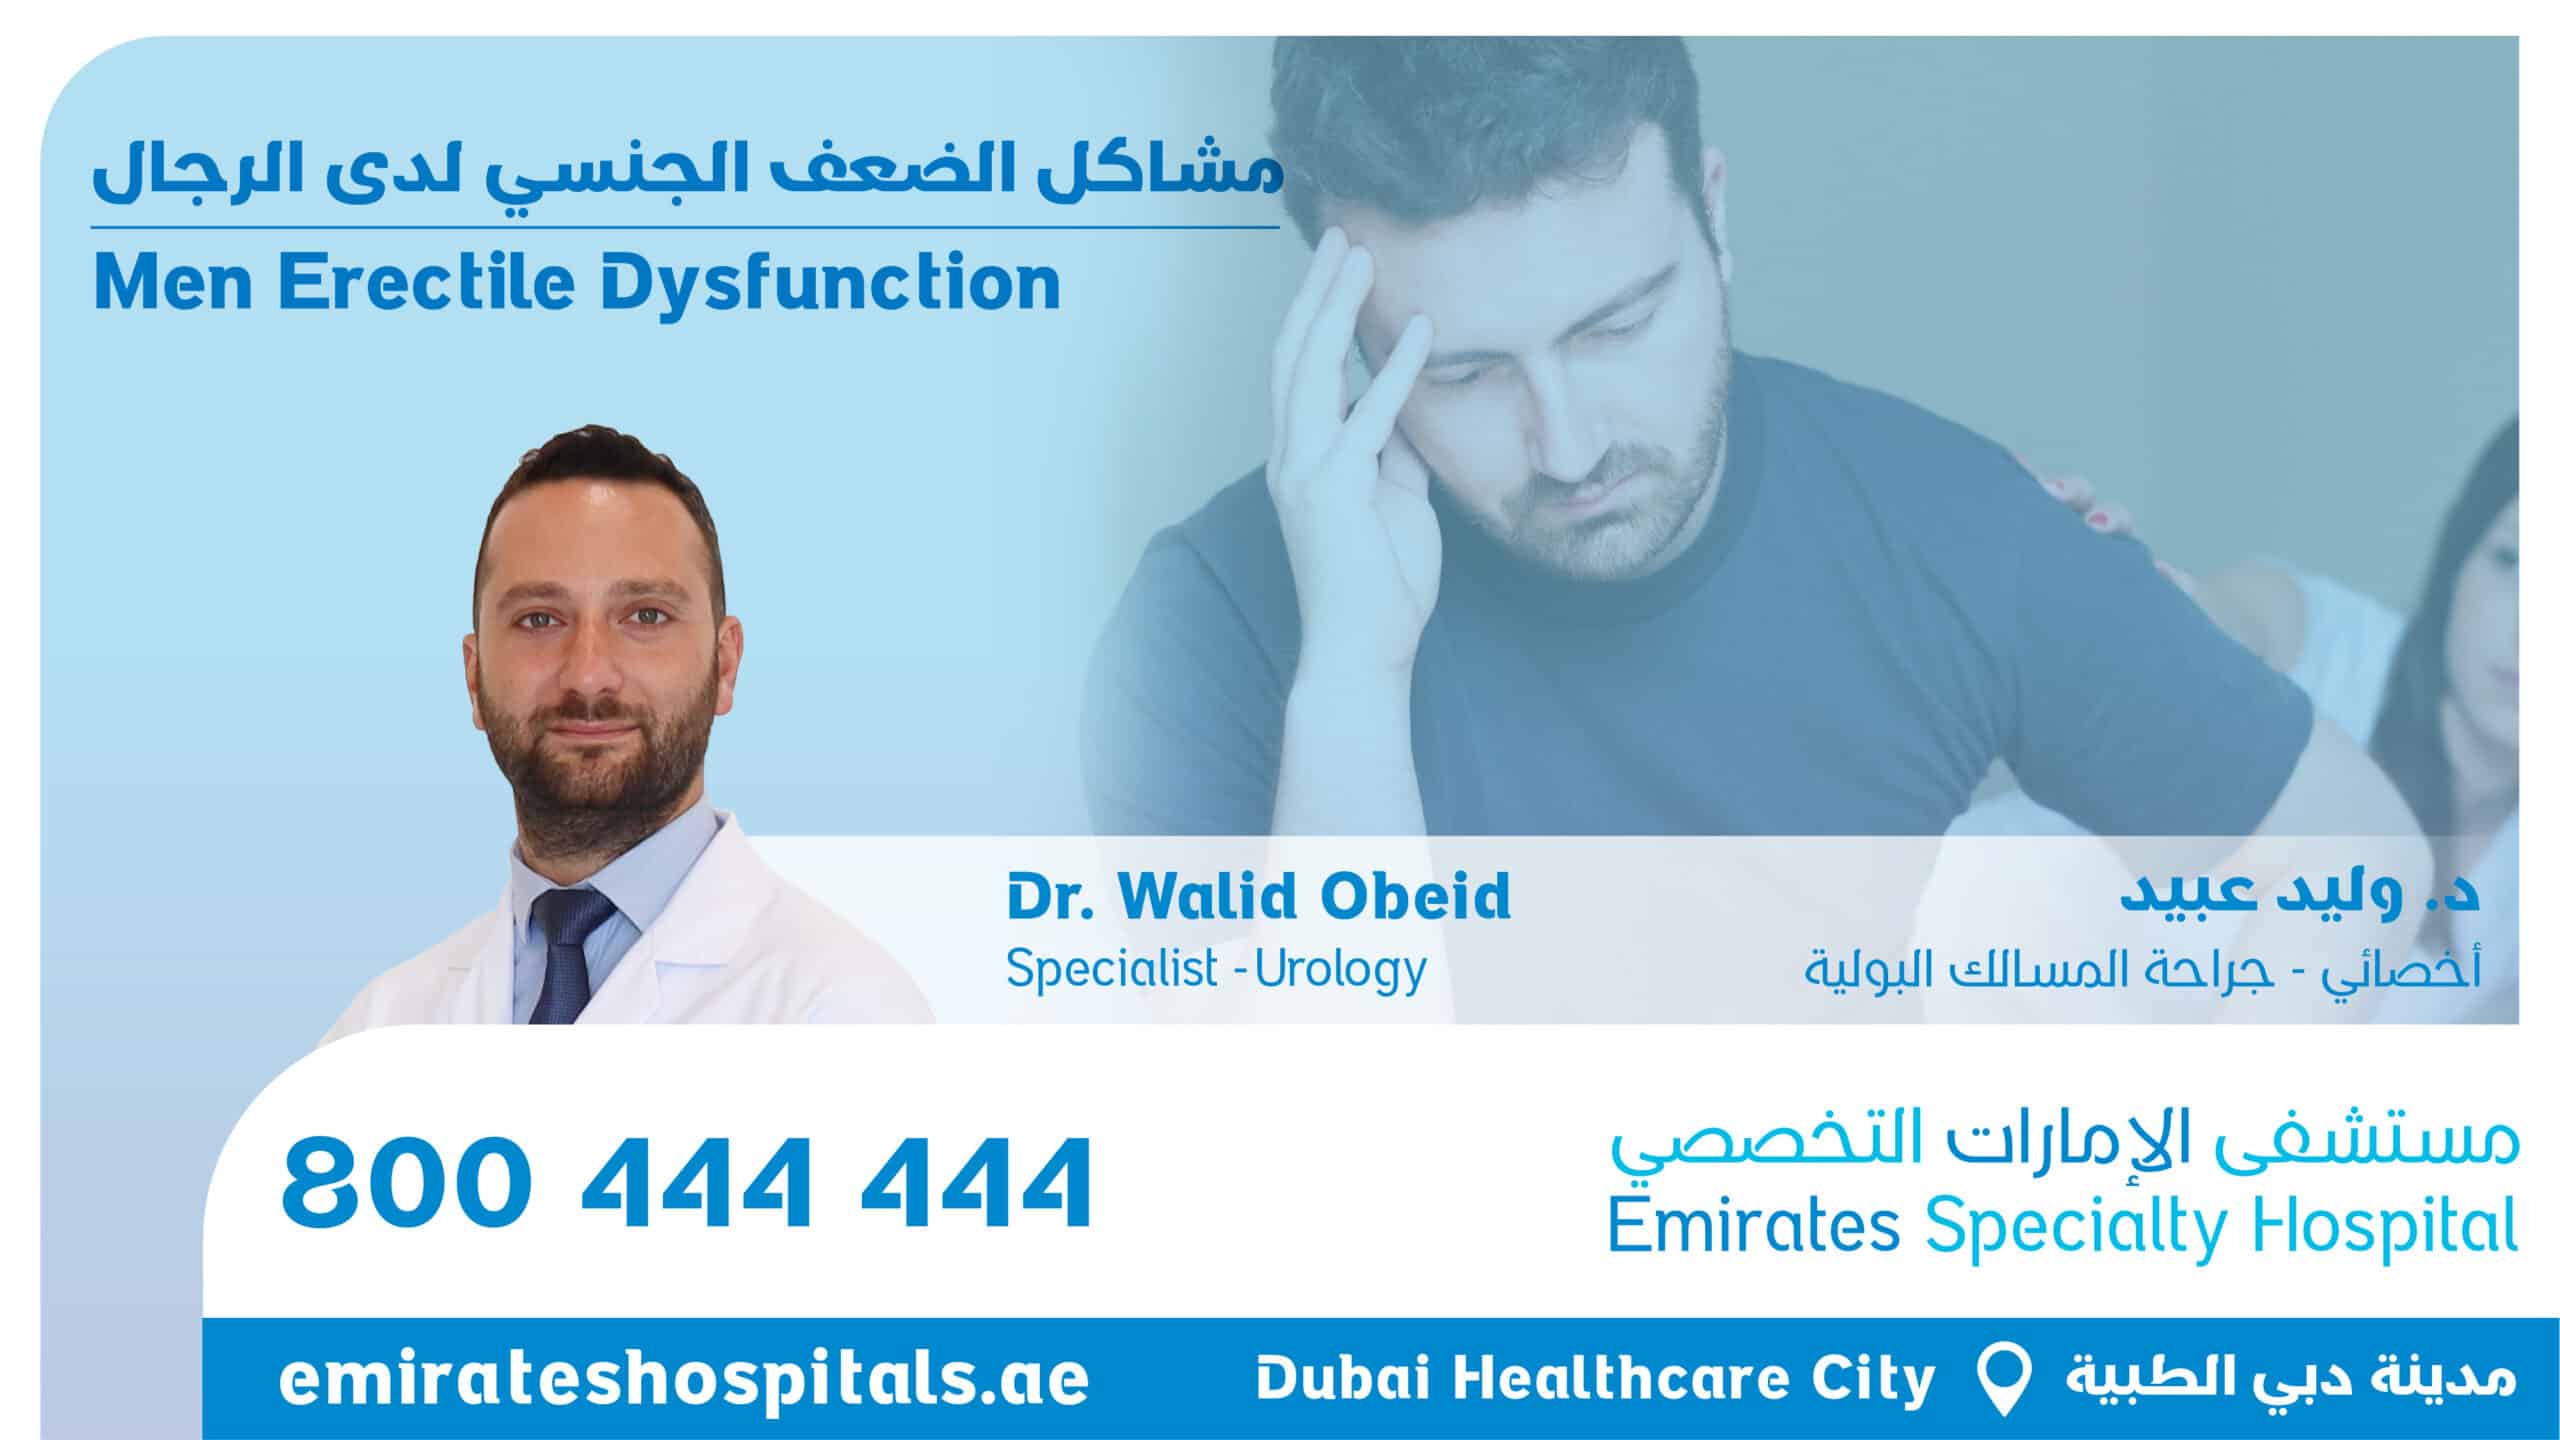 Men Erectile Dysfunction , Dr. Walid Obeid - Specialist Urologist